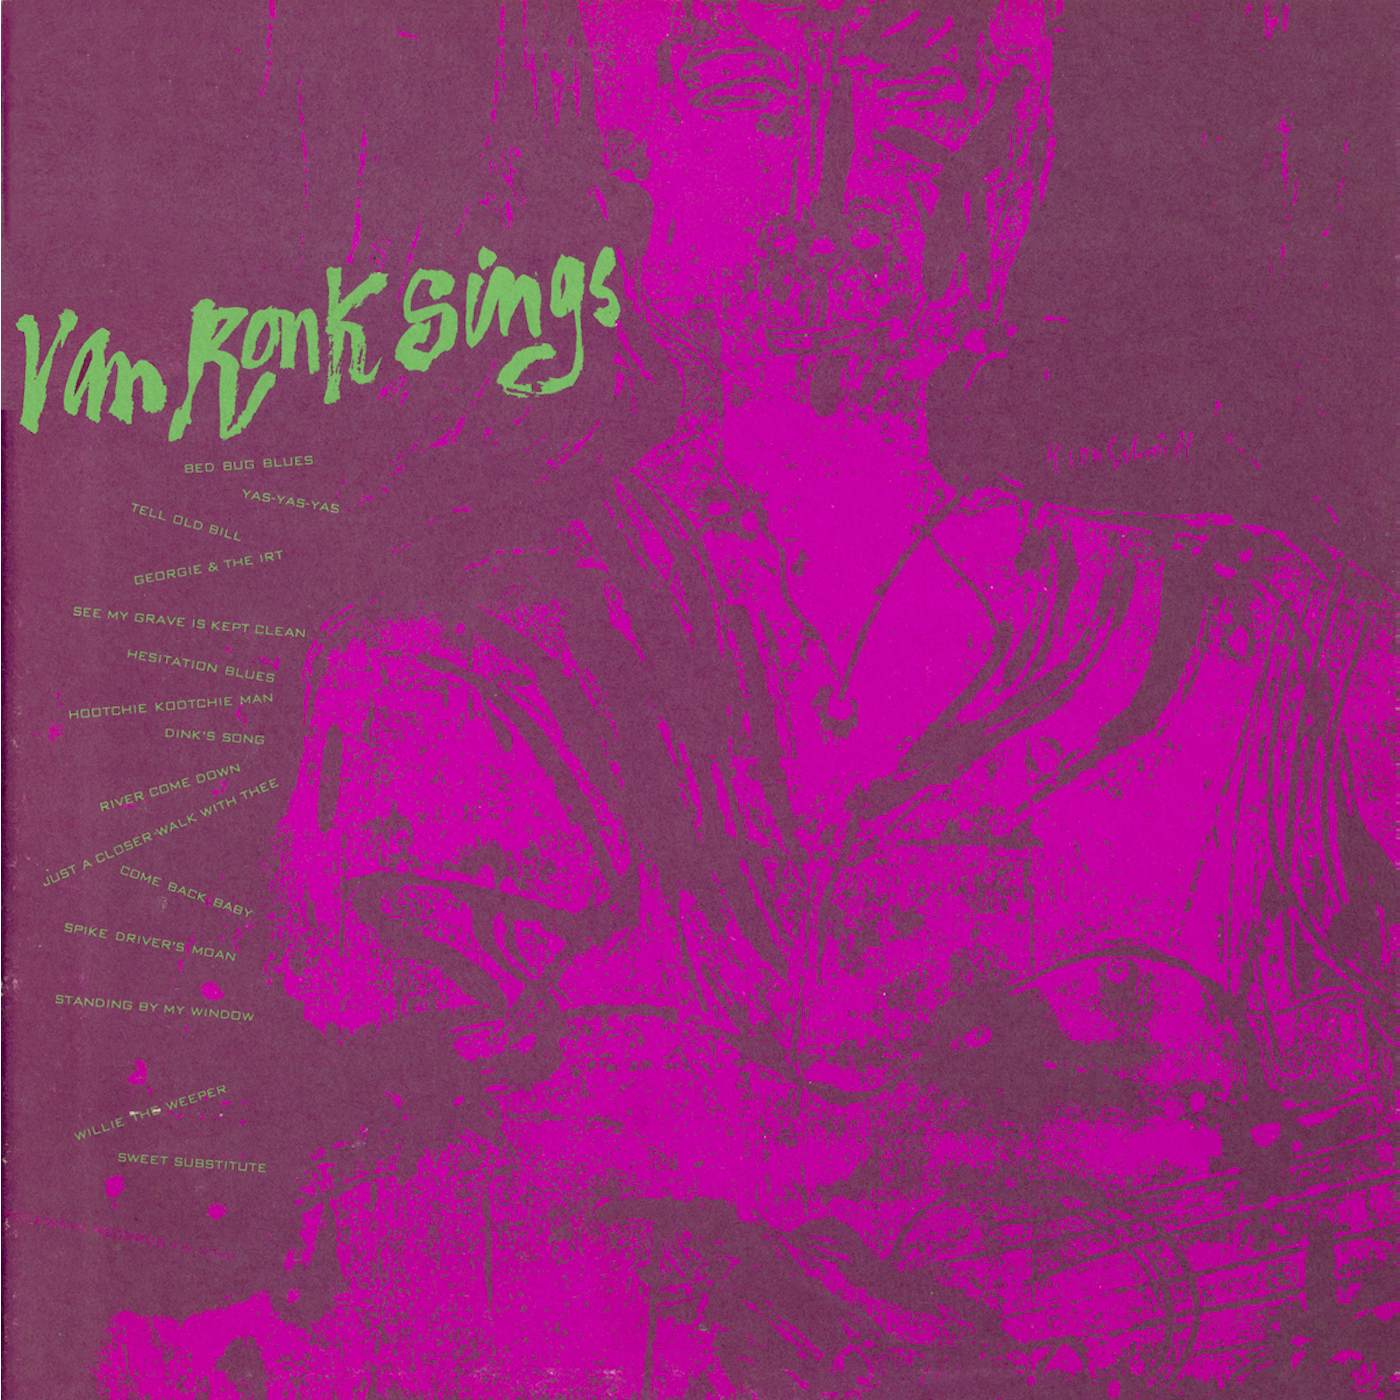 DAVE VAN RONK SINGS CD